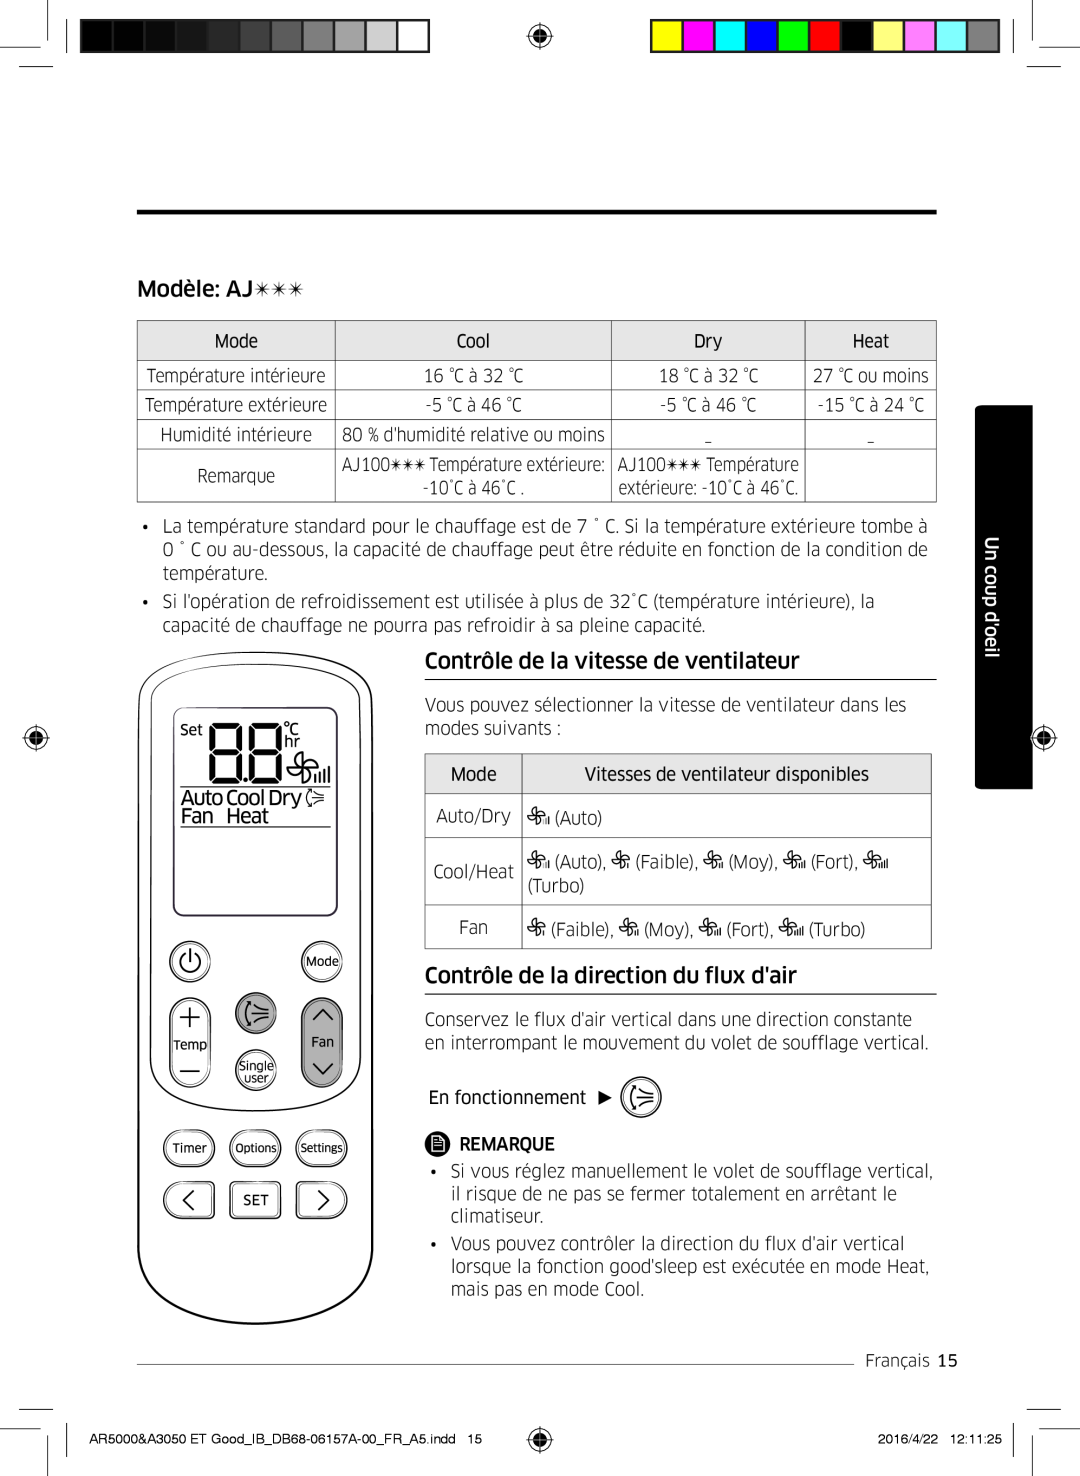 Samsung AR09HSFNCWKNET manual Modèle AJ, Contrôle de la vitesse de ventilateur, Contrôle de la direction du flux dair 